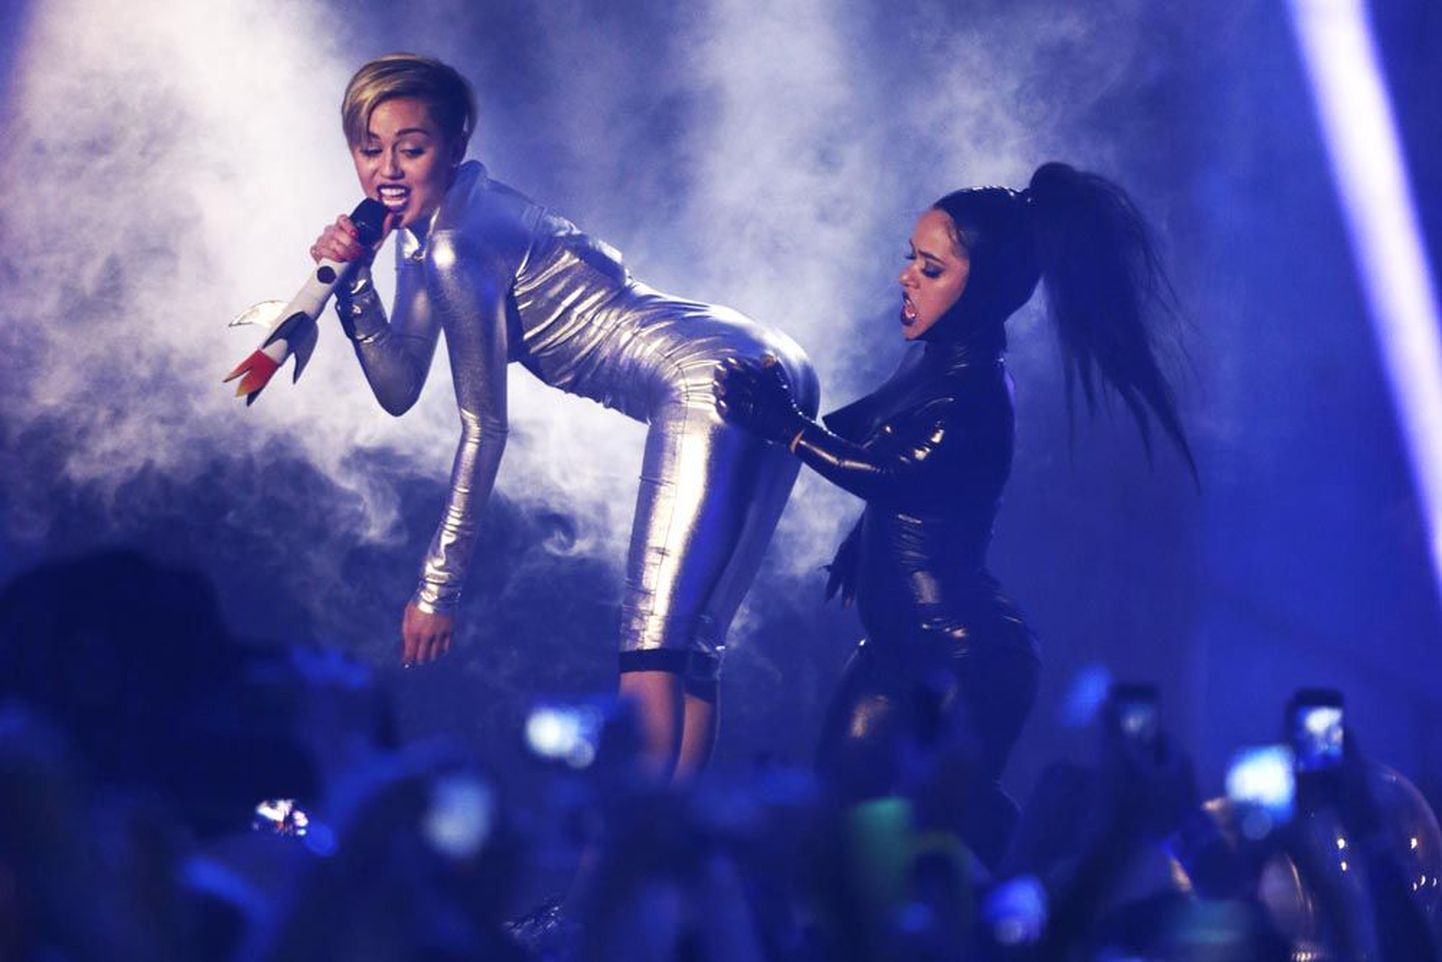 MTV Euroopa muusikaauhindade etenduse säravaim täht, popstaar Miley Cyrus tõi oma esinemisele kaasa kosmoseteema ning liibuvad kostüümid.